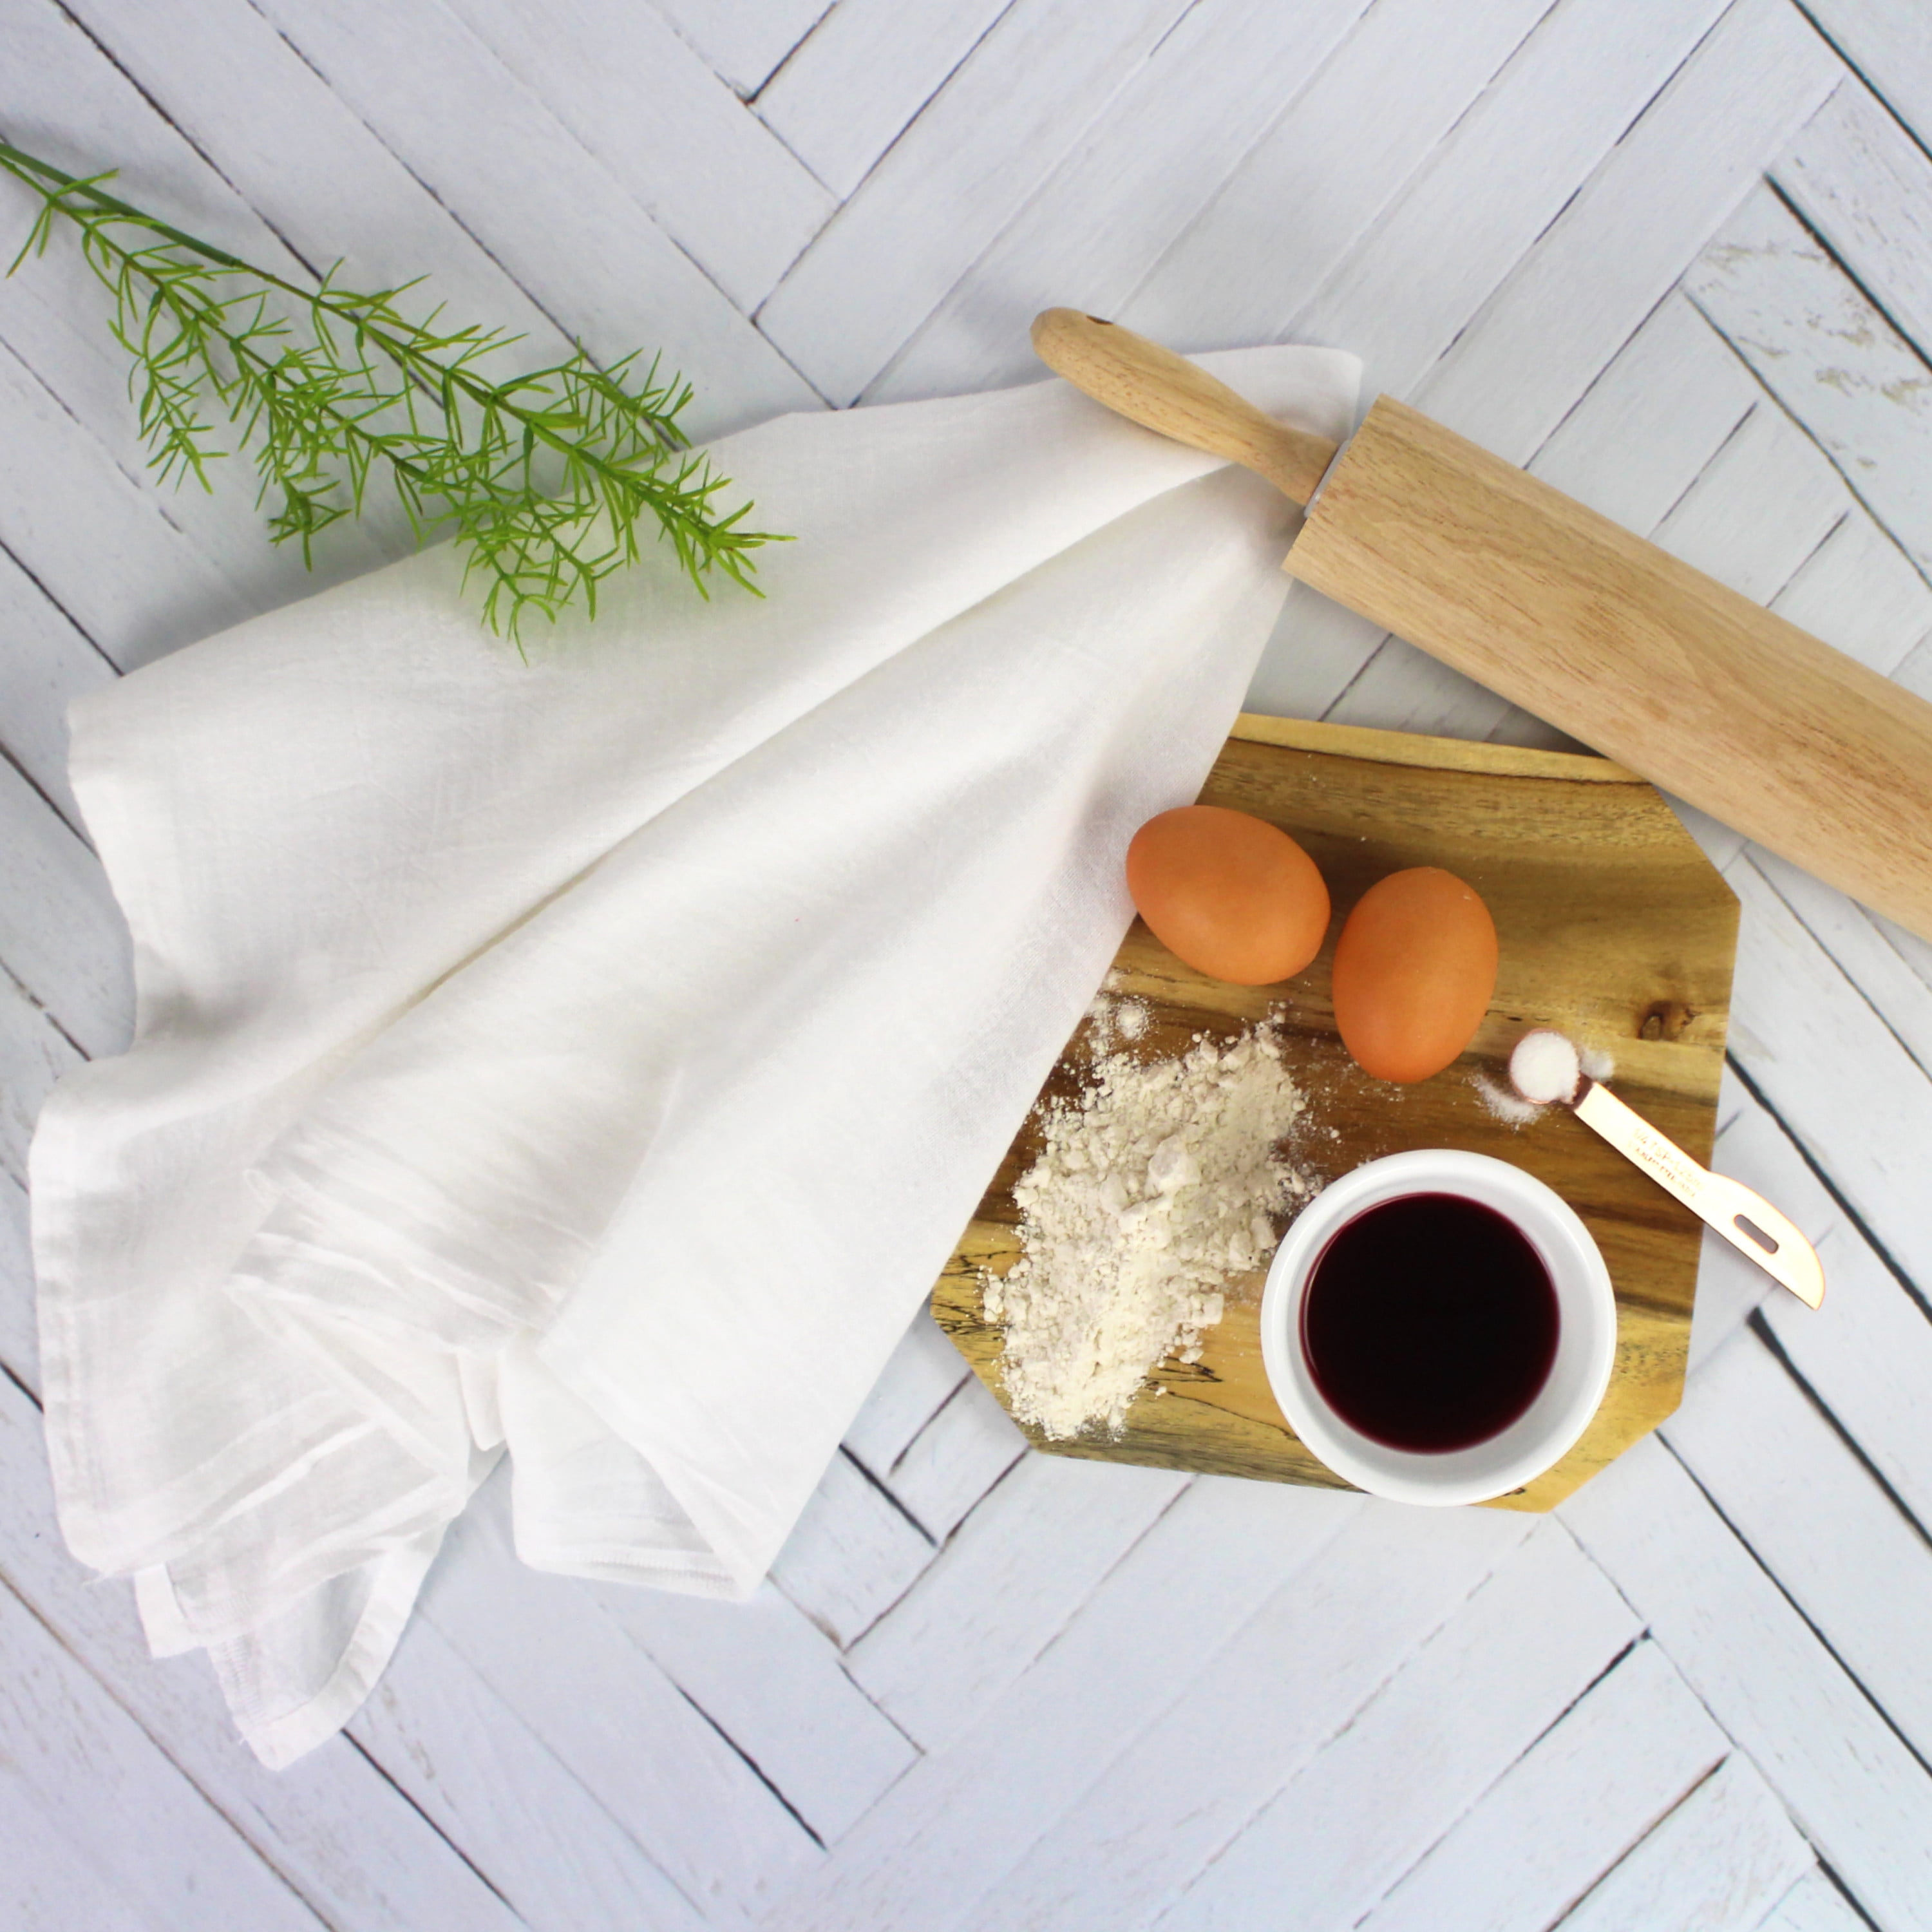 Ginger's Breadboys - Flour Sack Kitchen Tea Towels, White